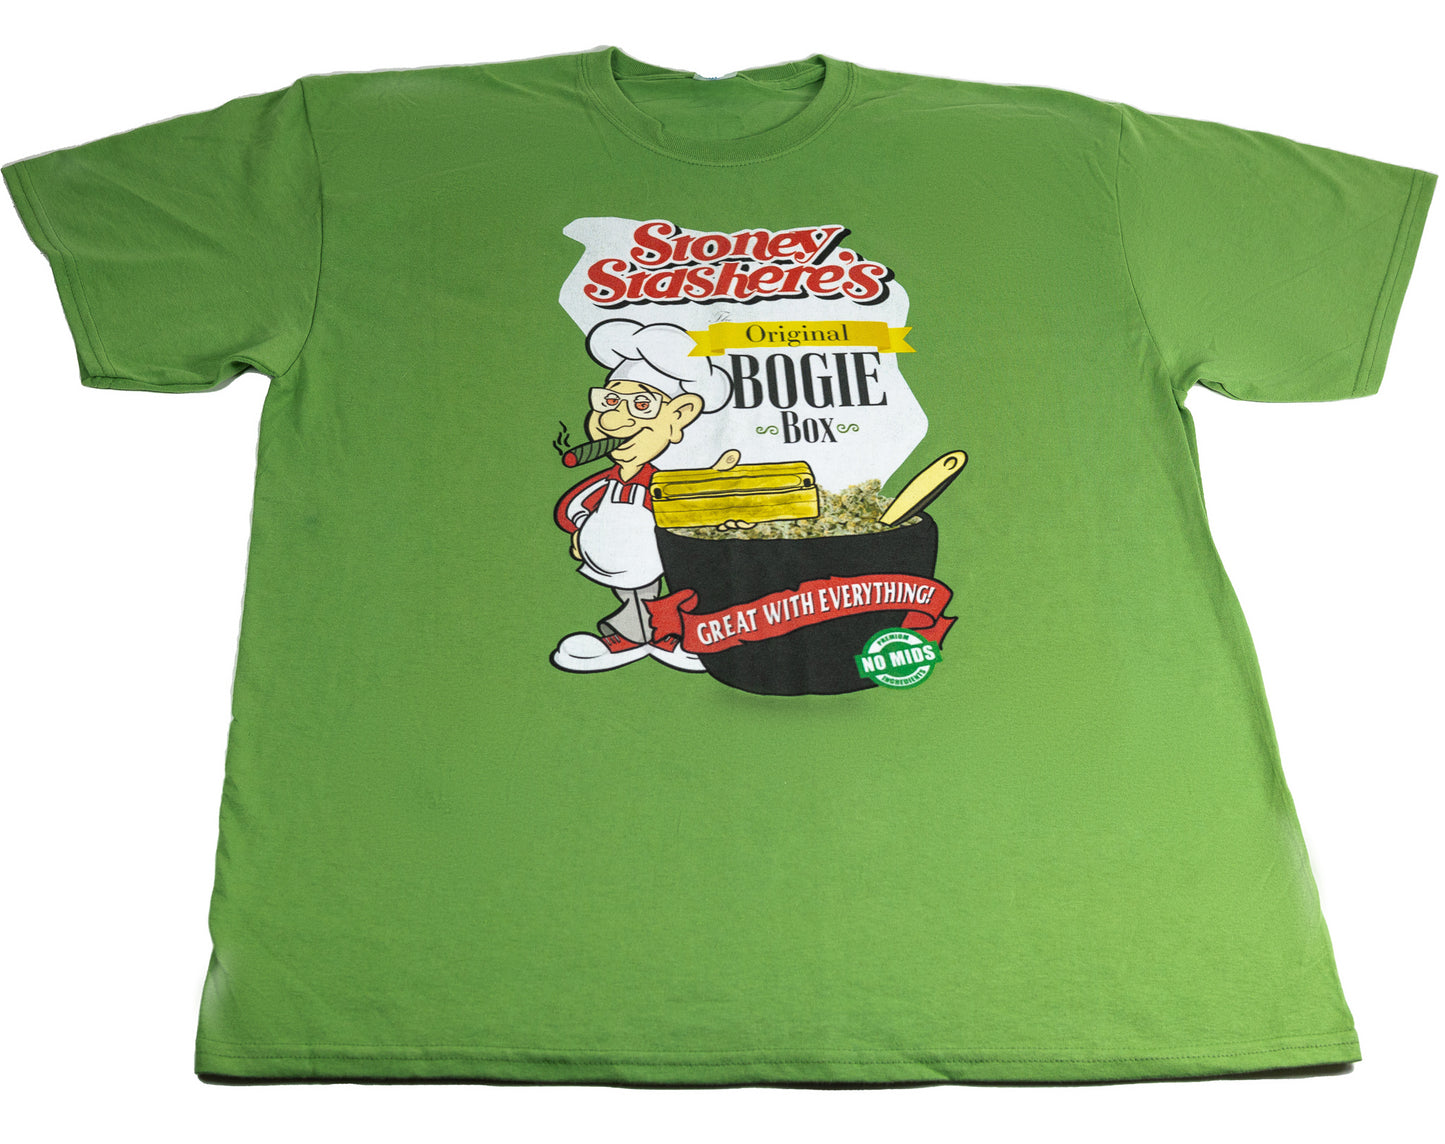 Stoney Stashere's T-Shirt